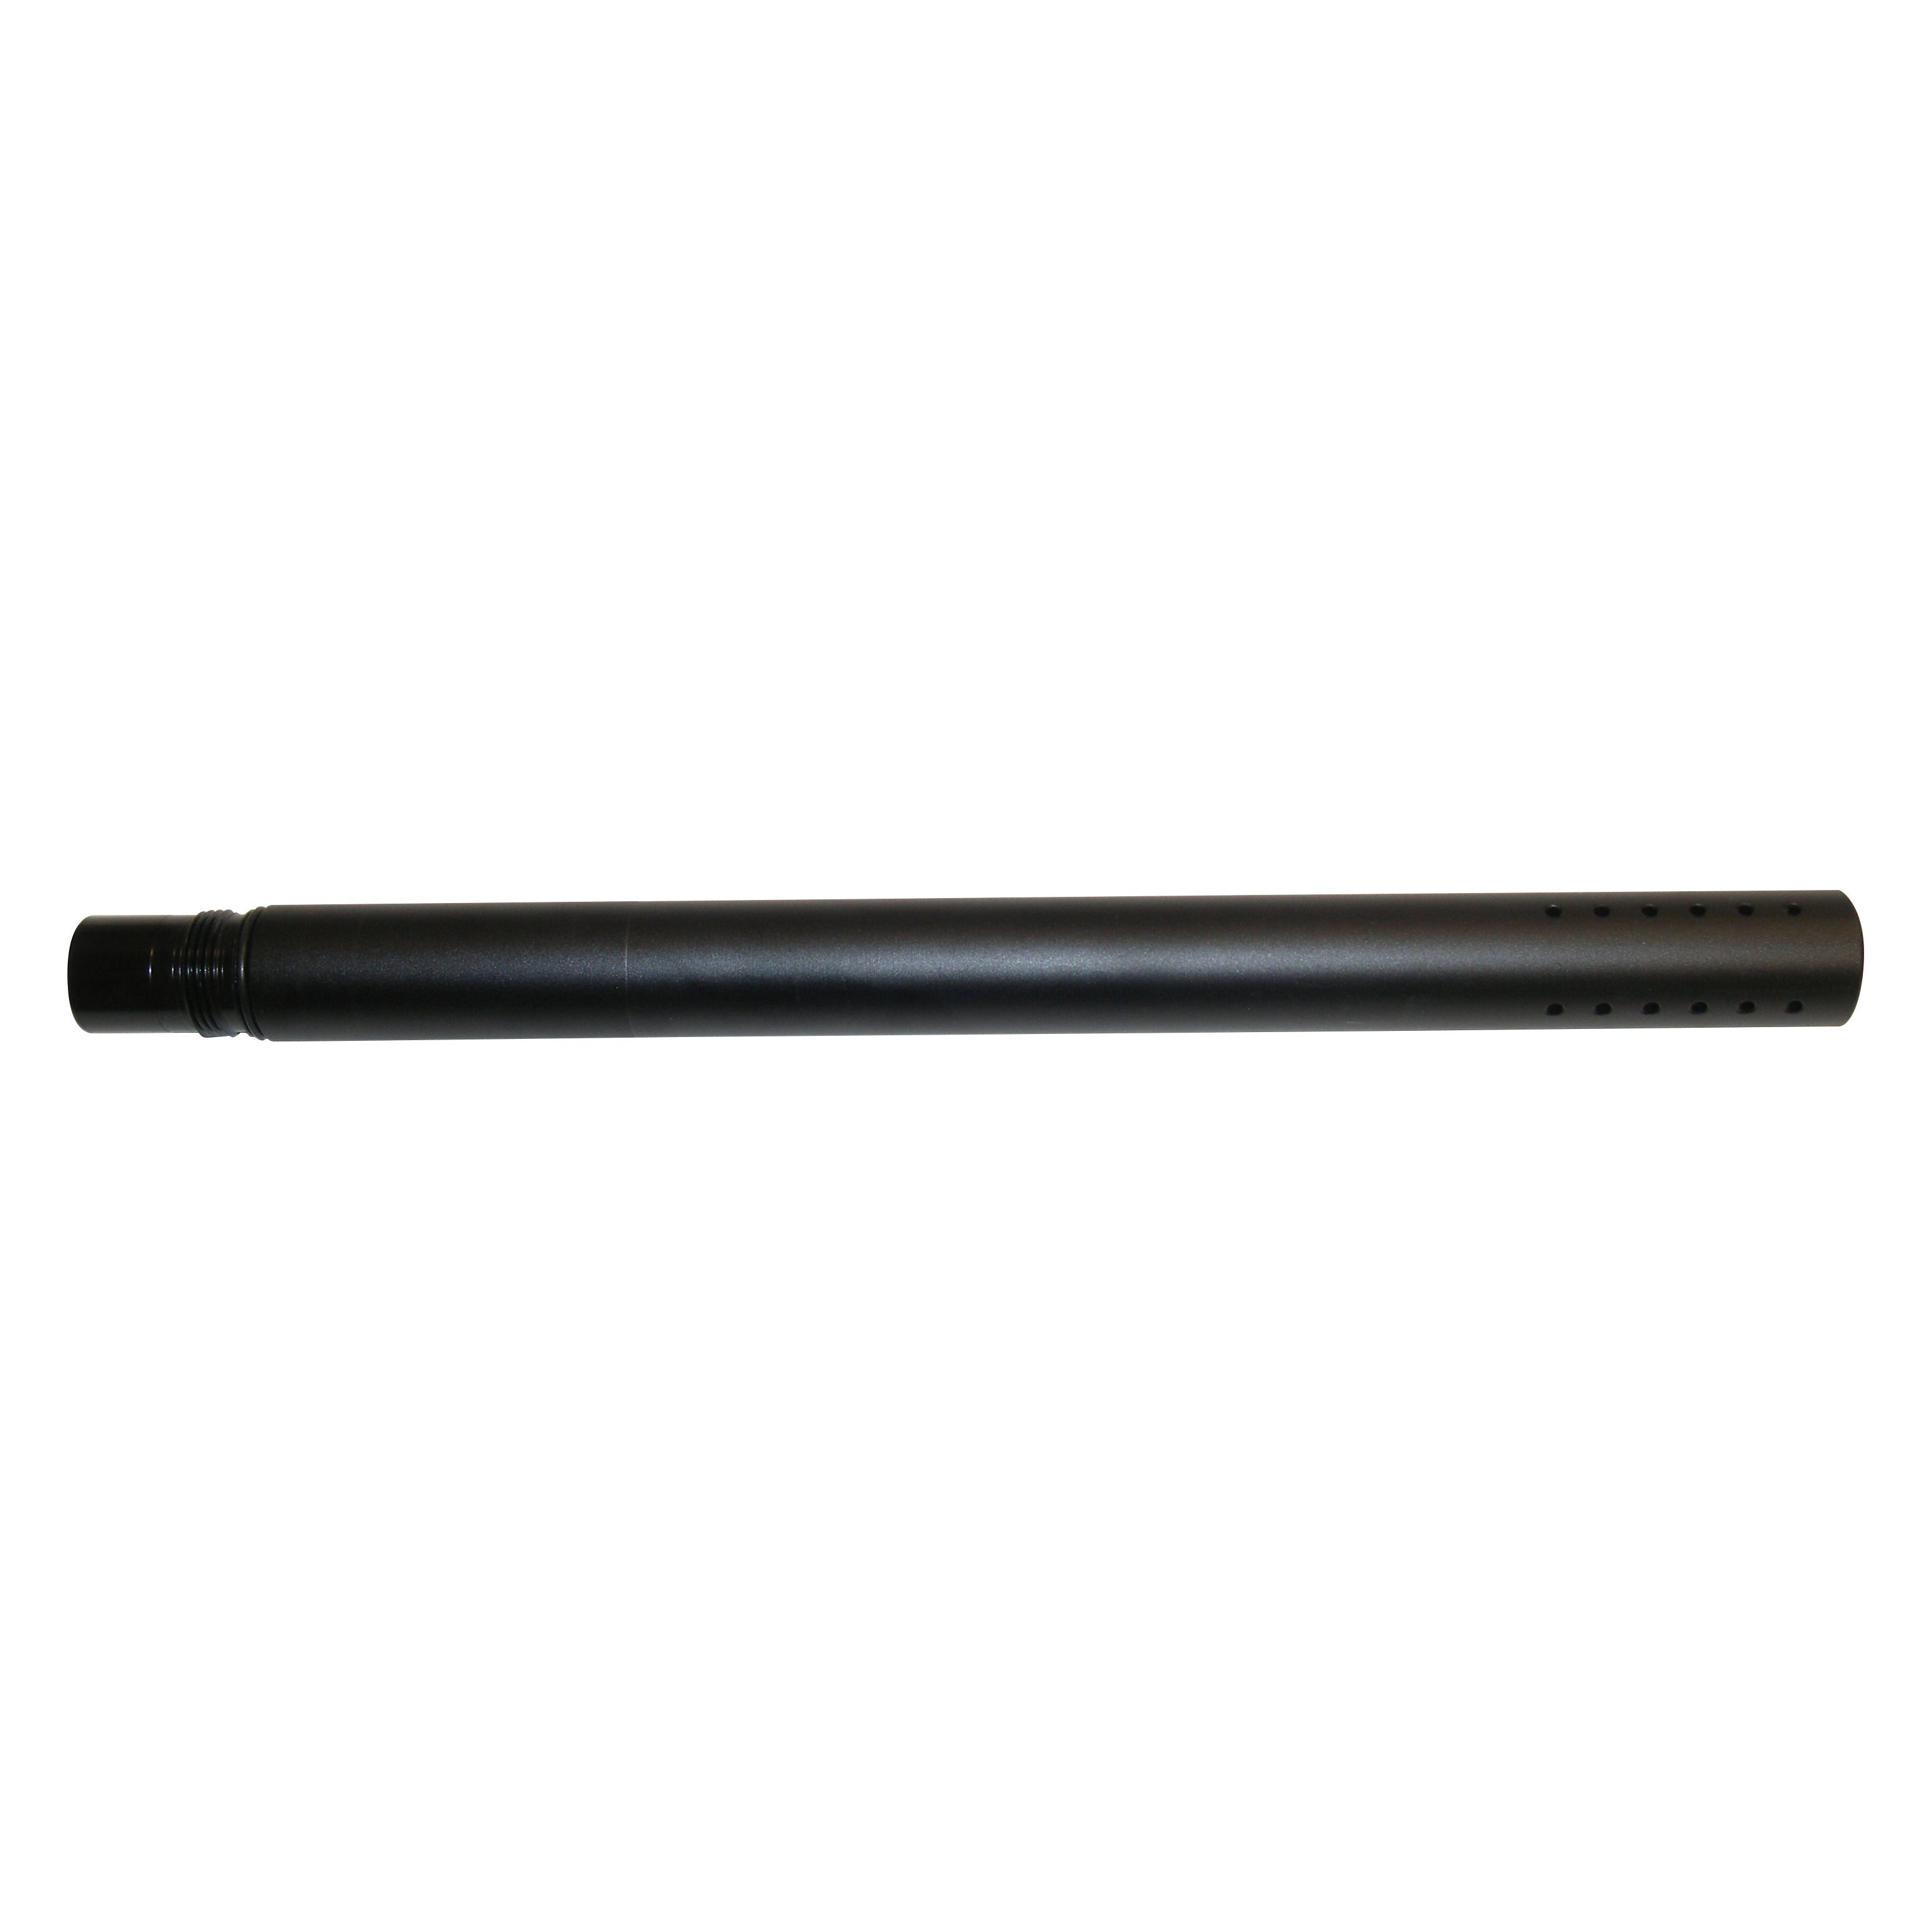 12" Spyder Mil Sim Paintball Gun Black Barrel Aggressor Fenix E99 Sonix Rec Bore